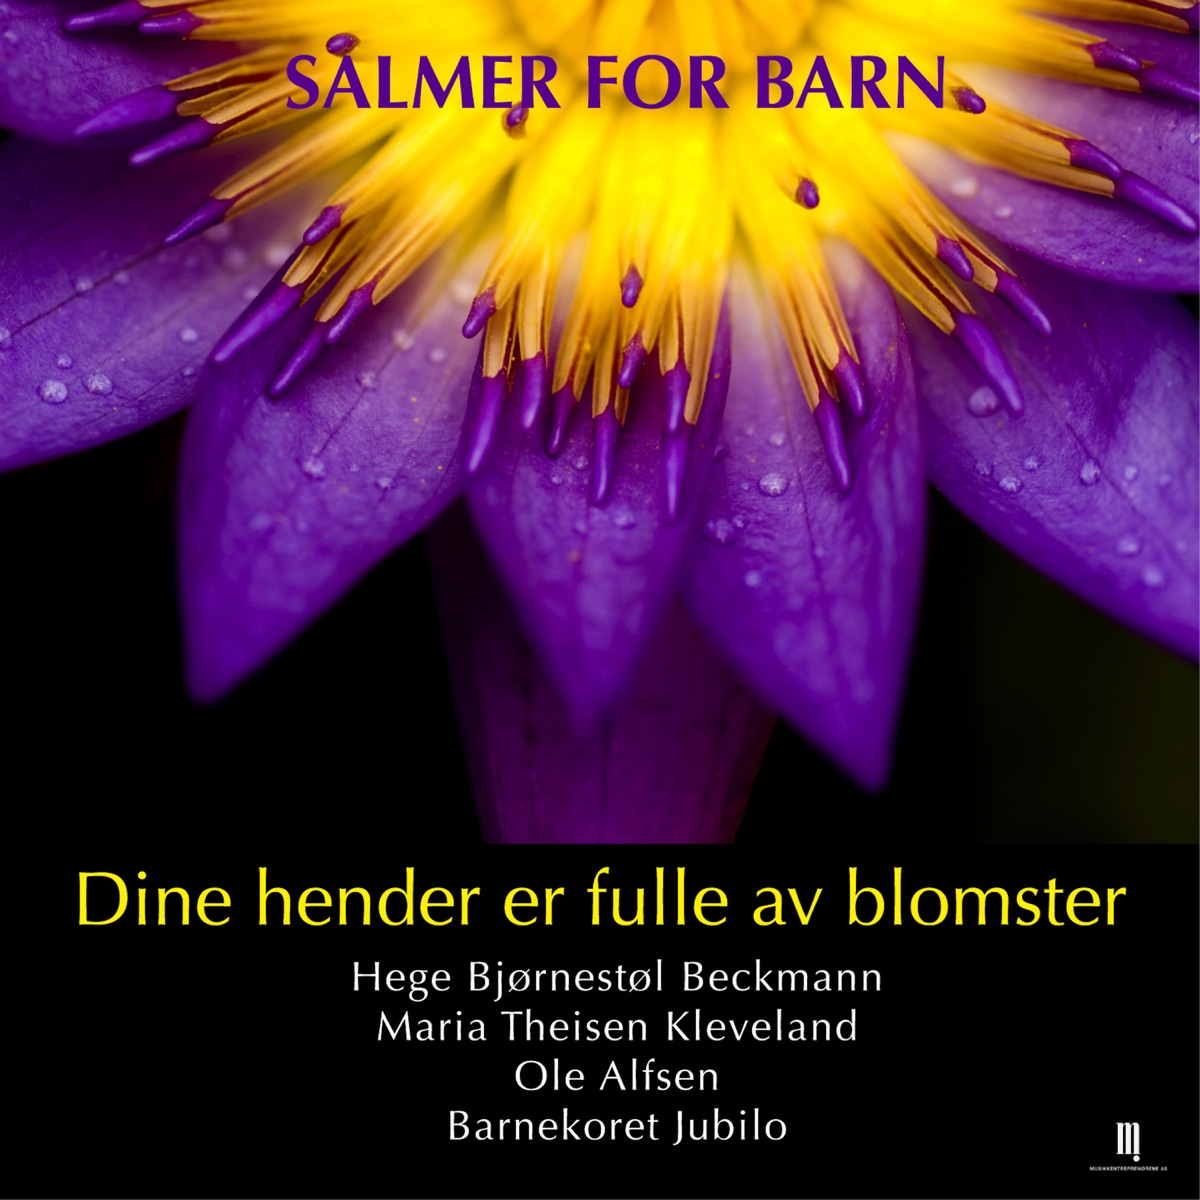 Dine Hender er Fulle av Blomster by Hege Bjørnestøl Beckmann, Maria Theisen  Kleveland & Ole Alfsen on Apple Music